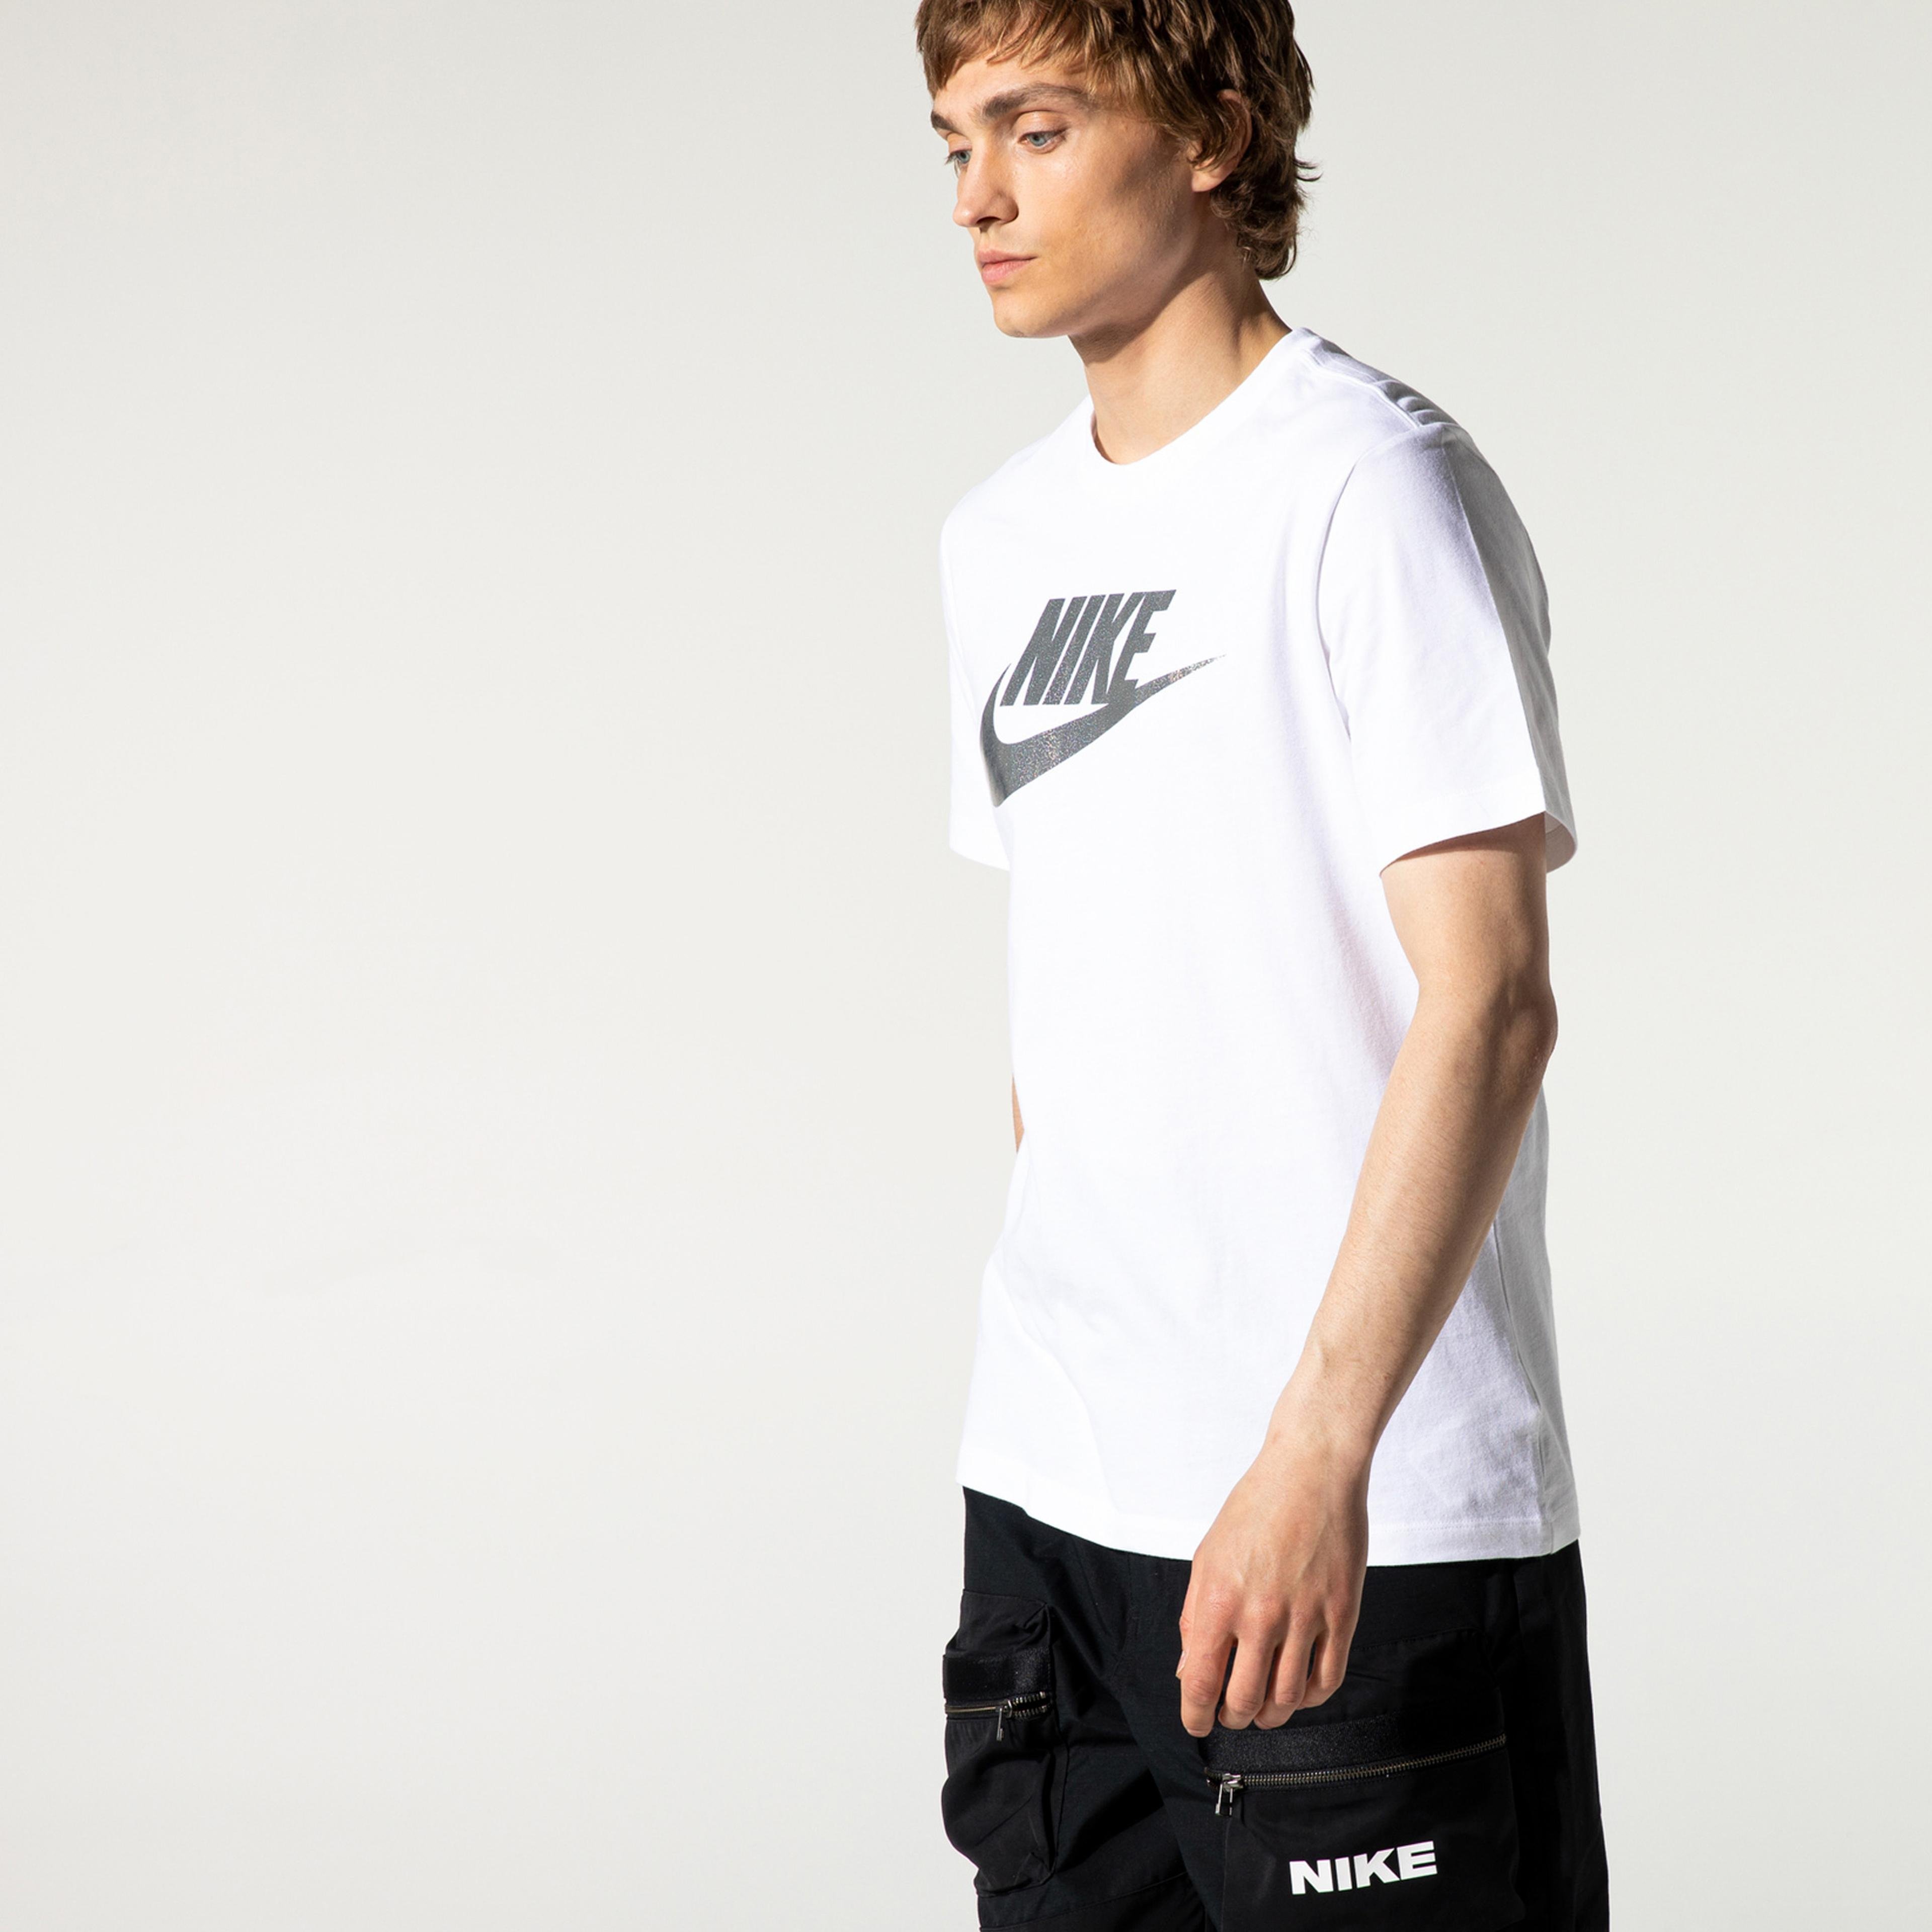 Nike Sportswear Brand Mark Erkek Beyaz T-Shirt